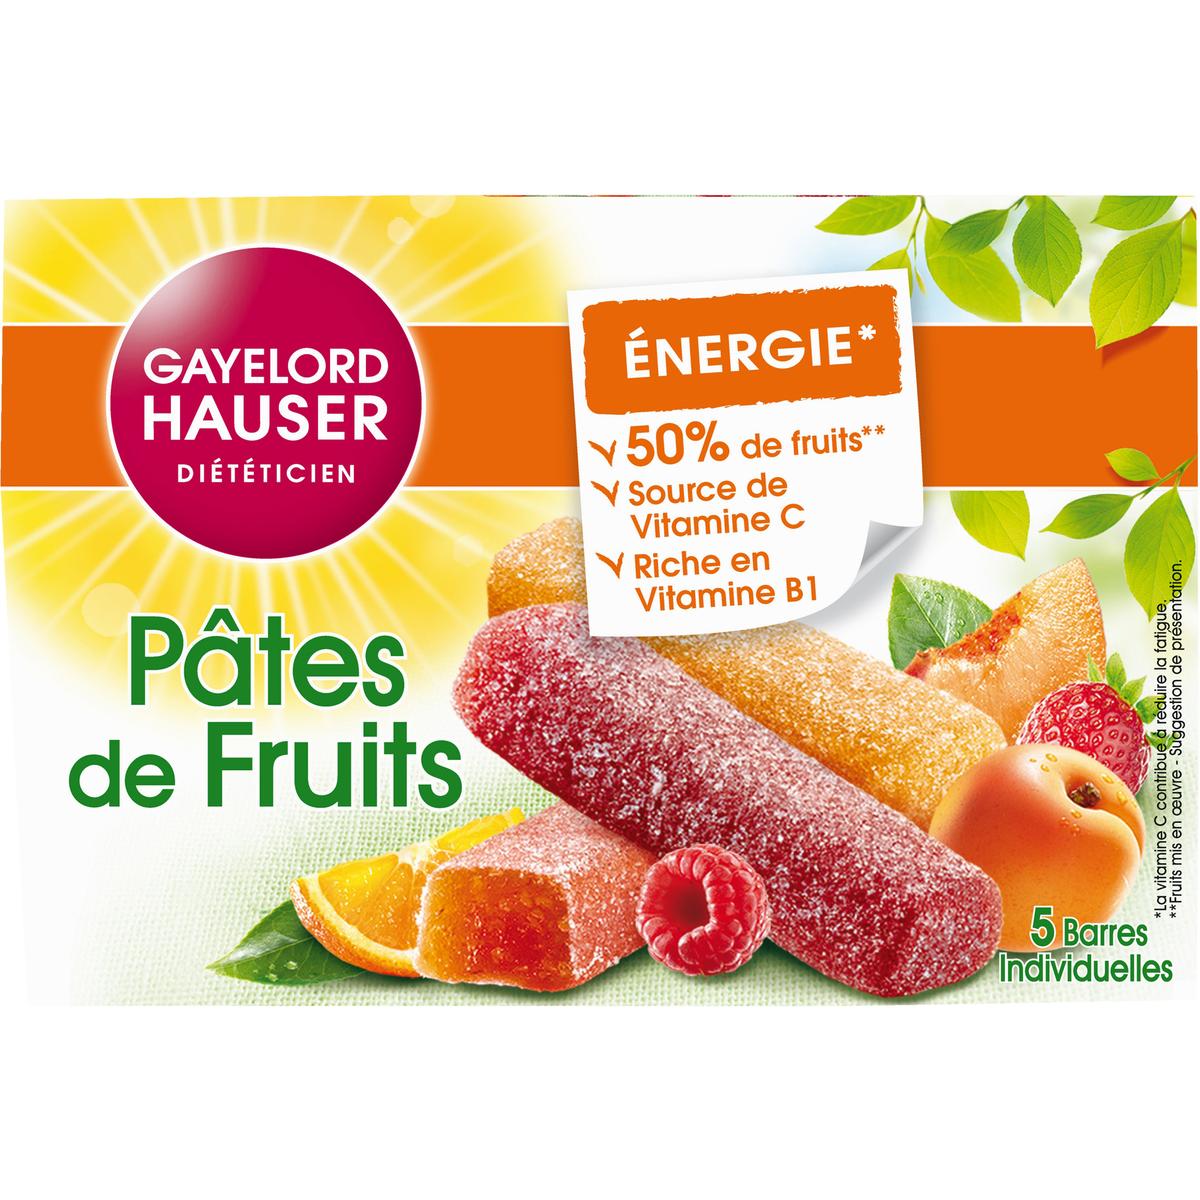 Achat / Vente Gayelord Hauser Pâtes de fruits au germe de blé, 125g